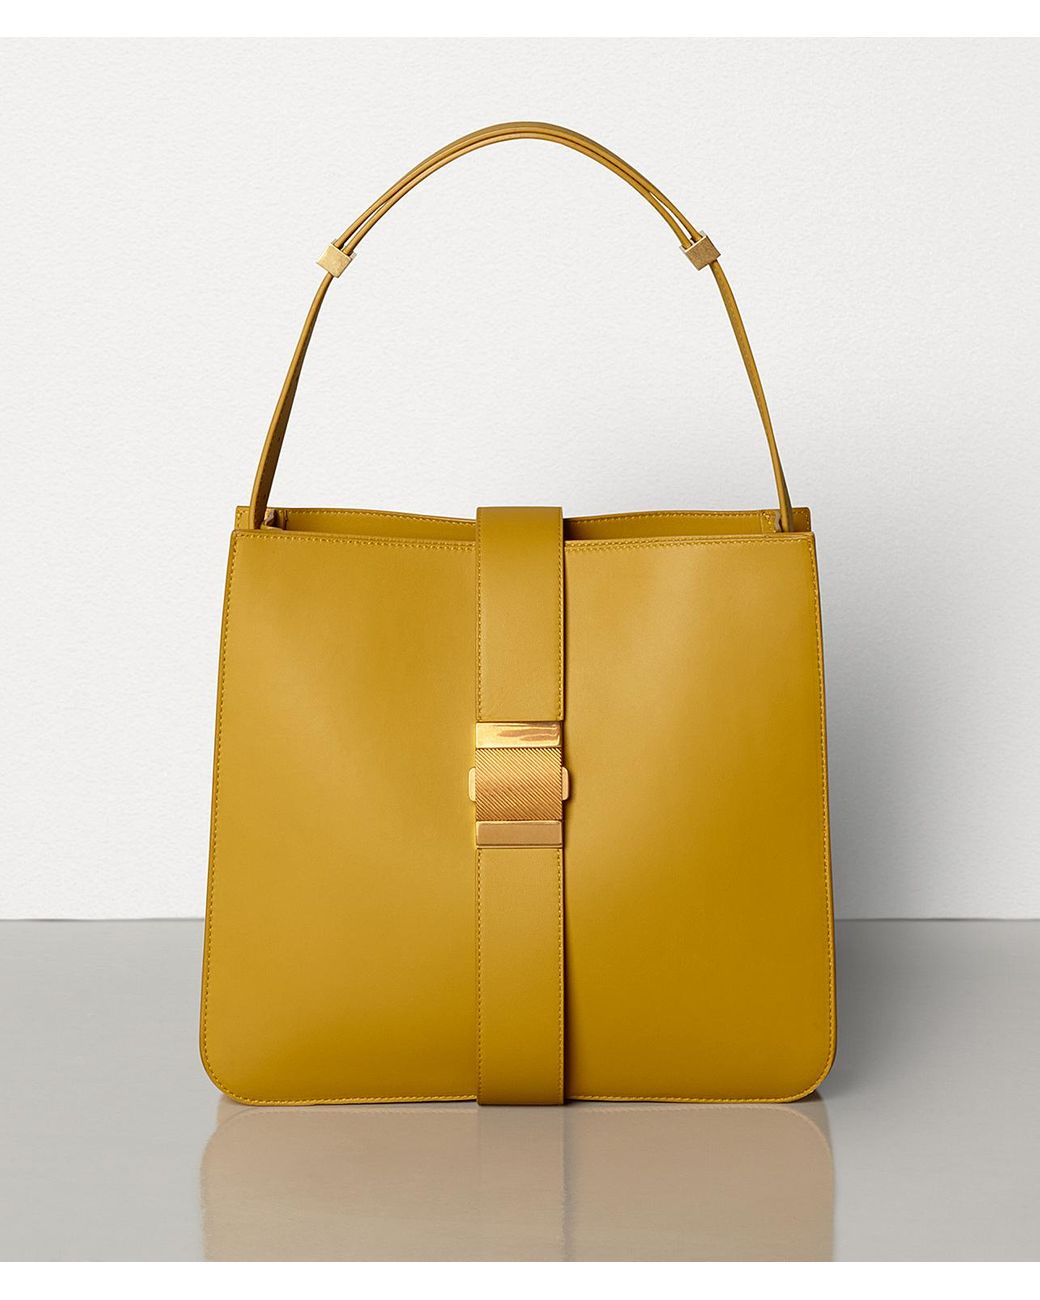 Merci Marie Handbags Chanelle Genuine Leather Bowler, $391 | Nordstrom Rack  | Lookastic